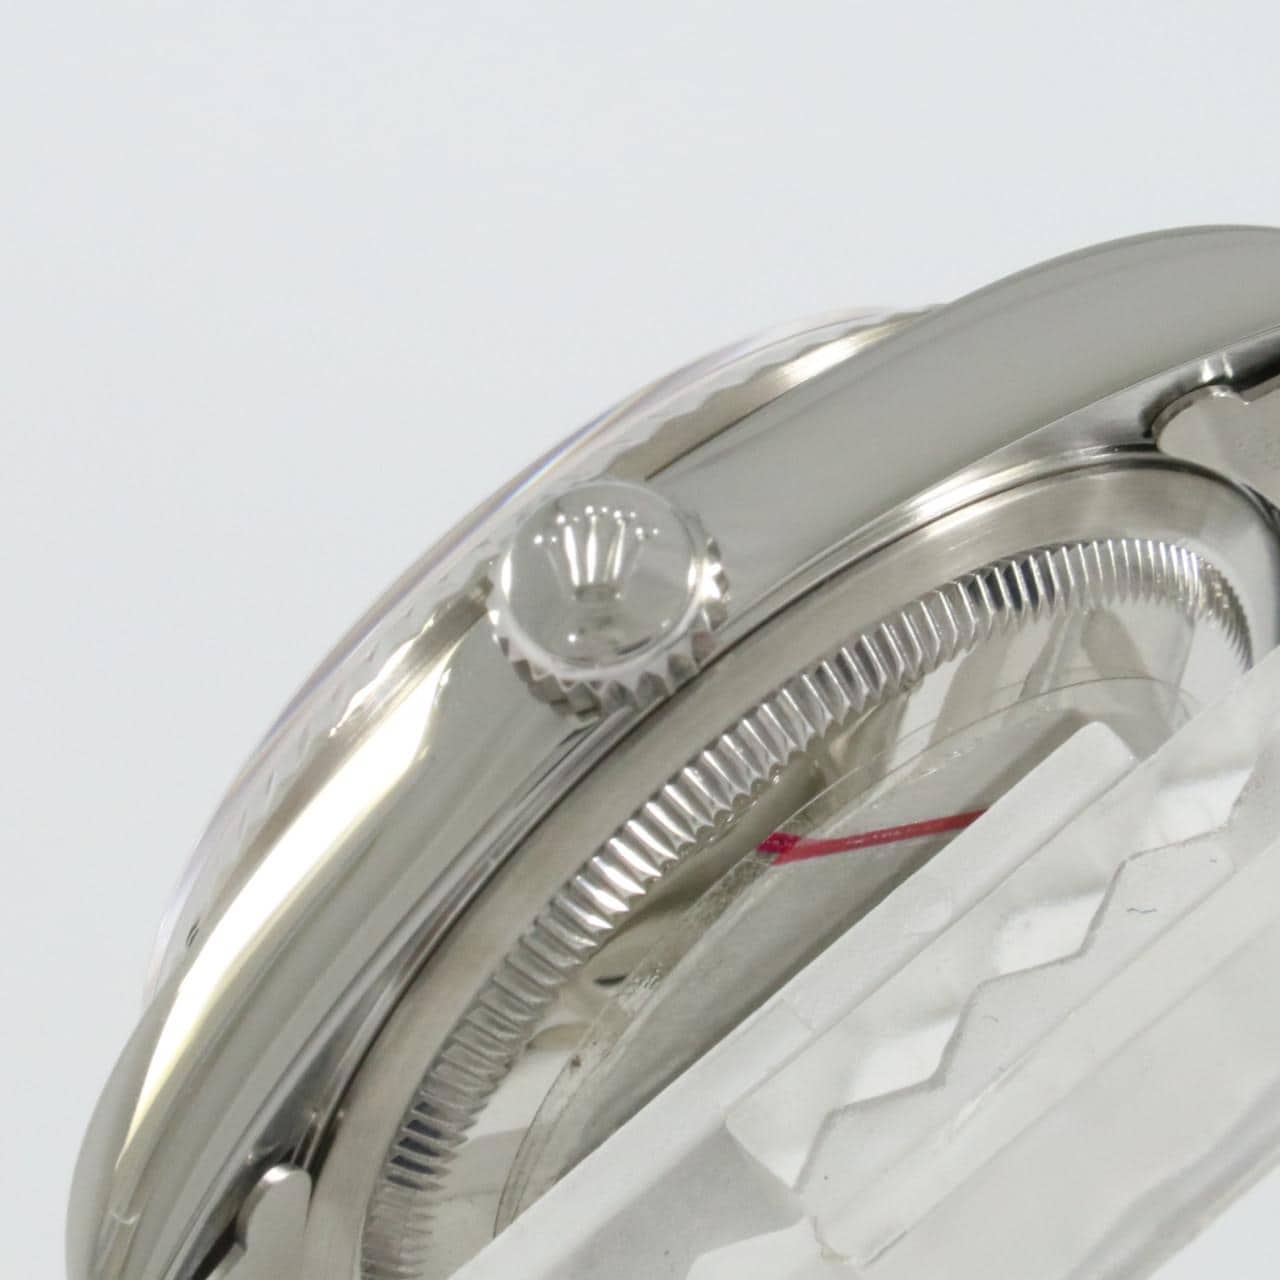 ロレックス ROLEX 16234 P番(2000年頃製造) グレー メンズ 腕時計